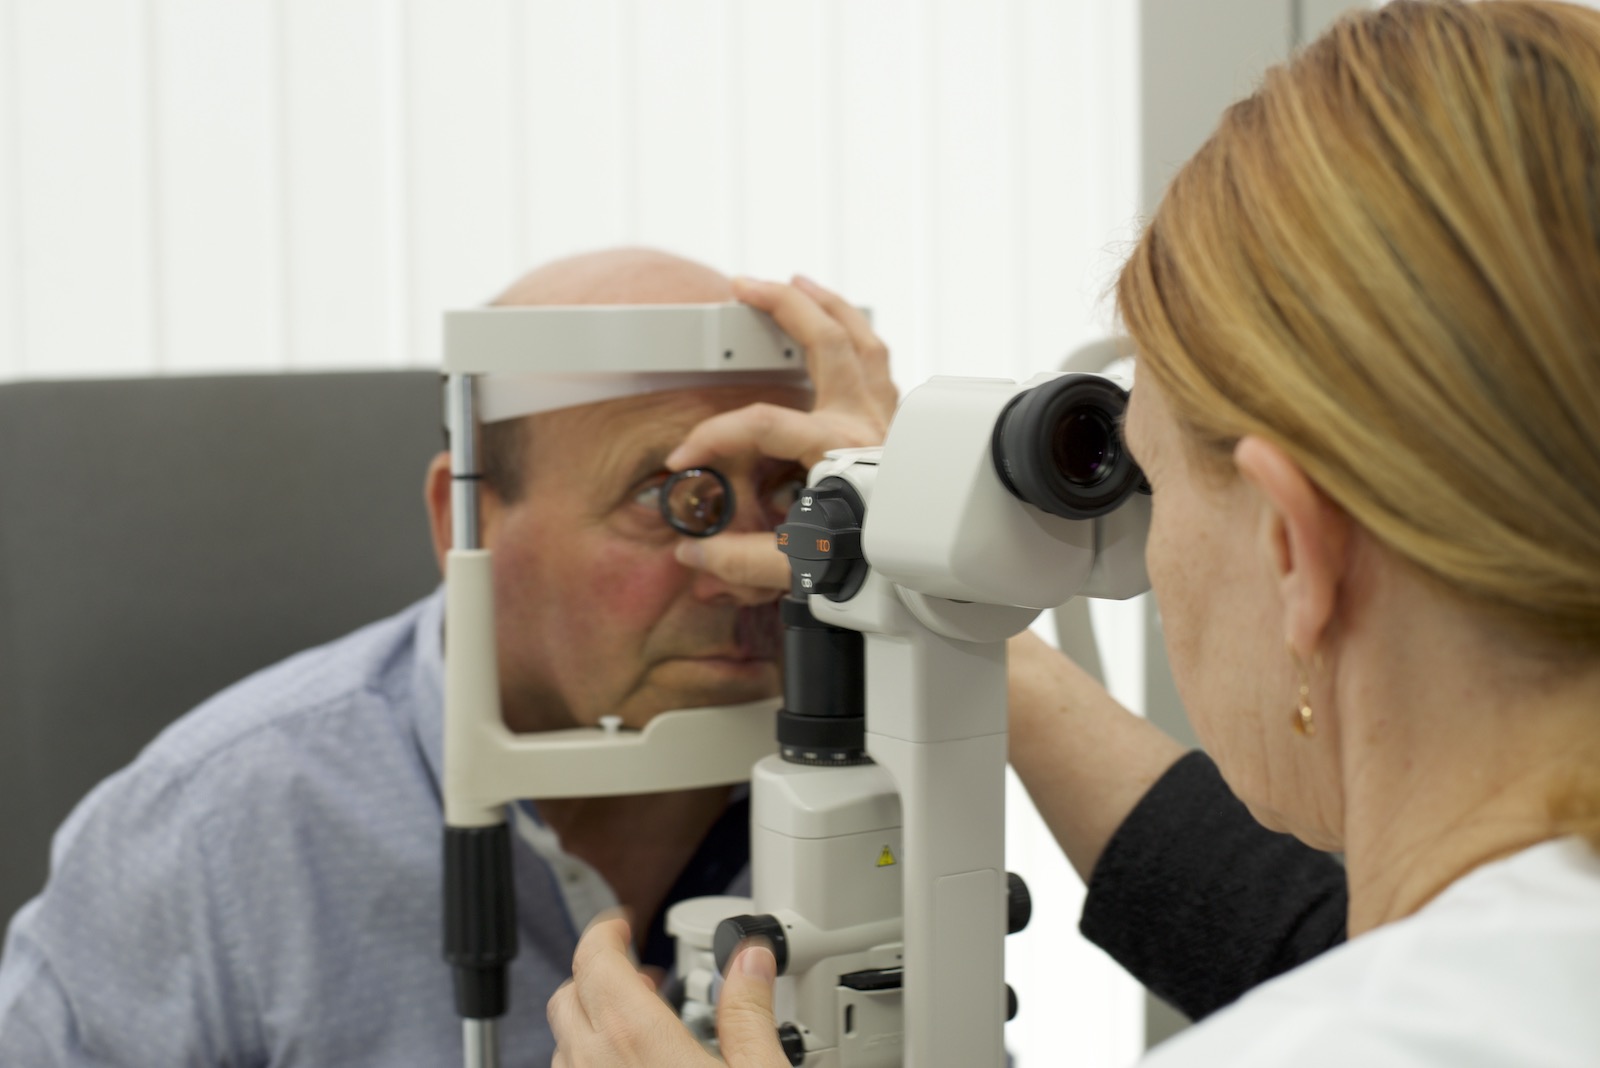 hipermetropie a glaucomului poate viziunea este plus și minus